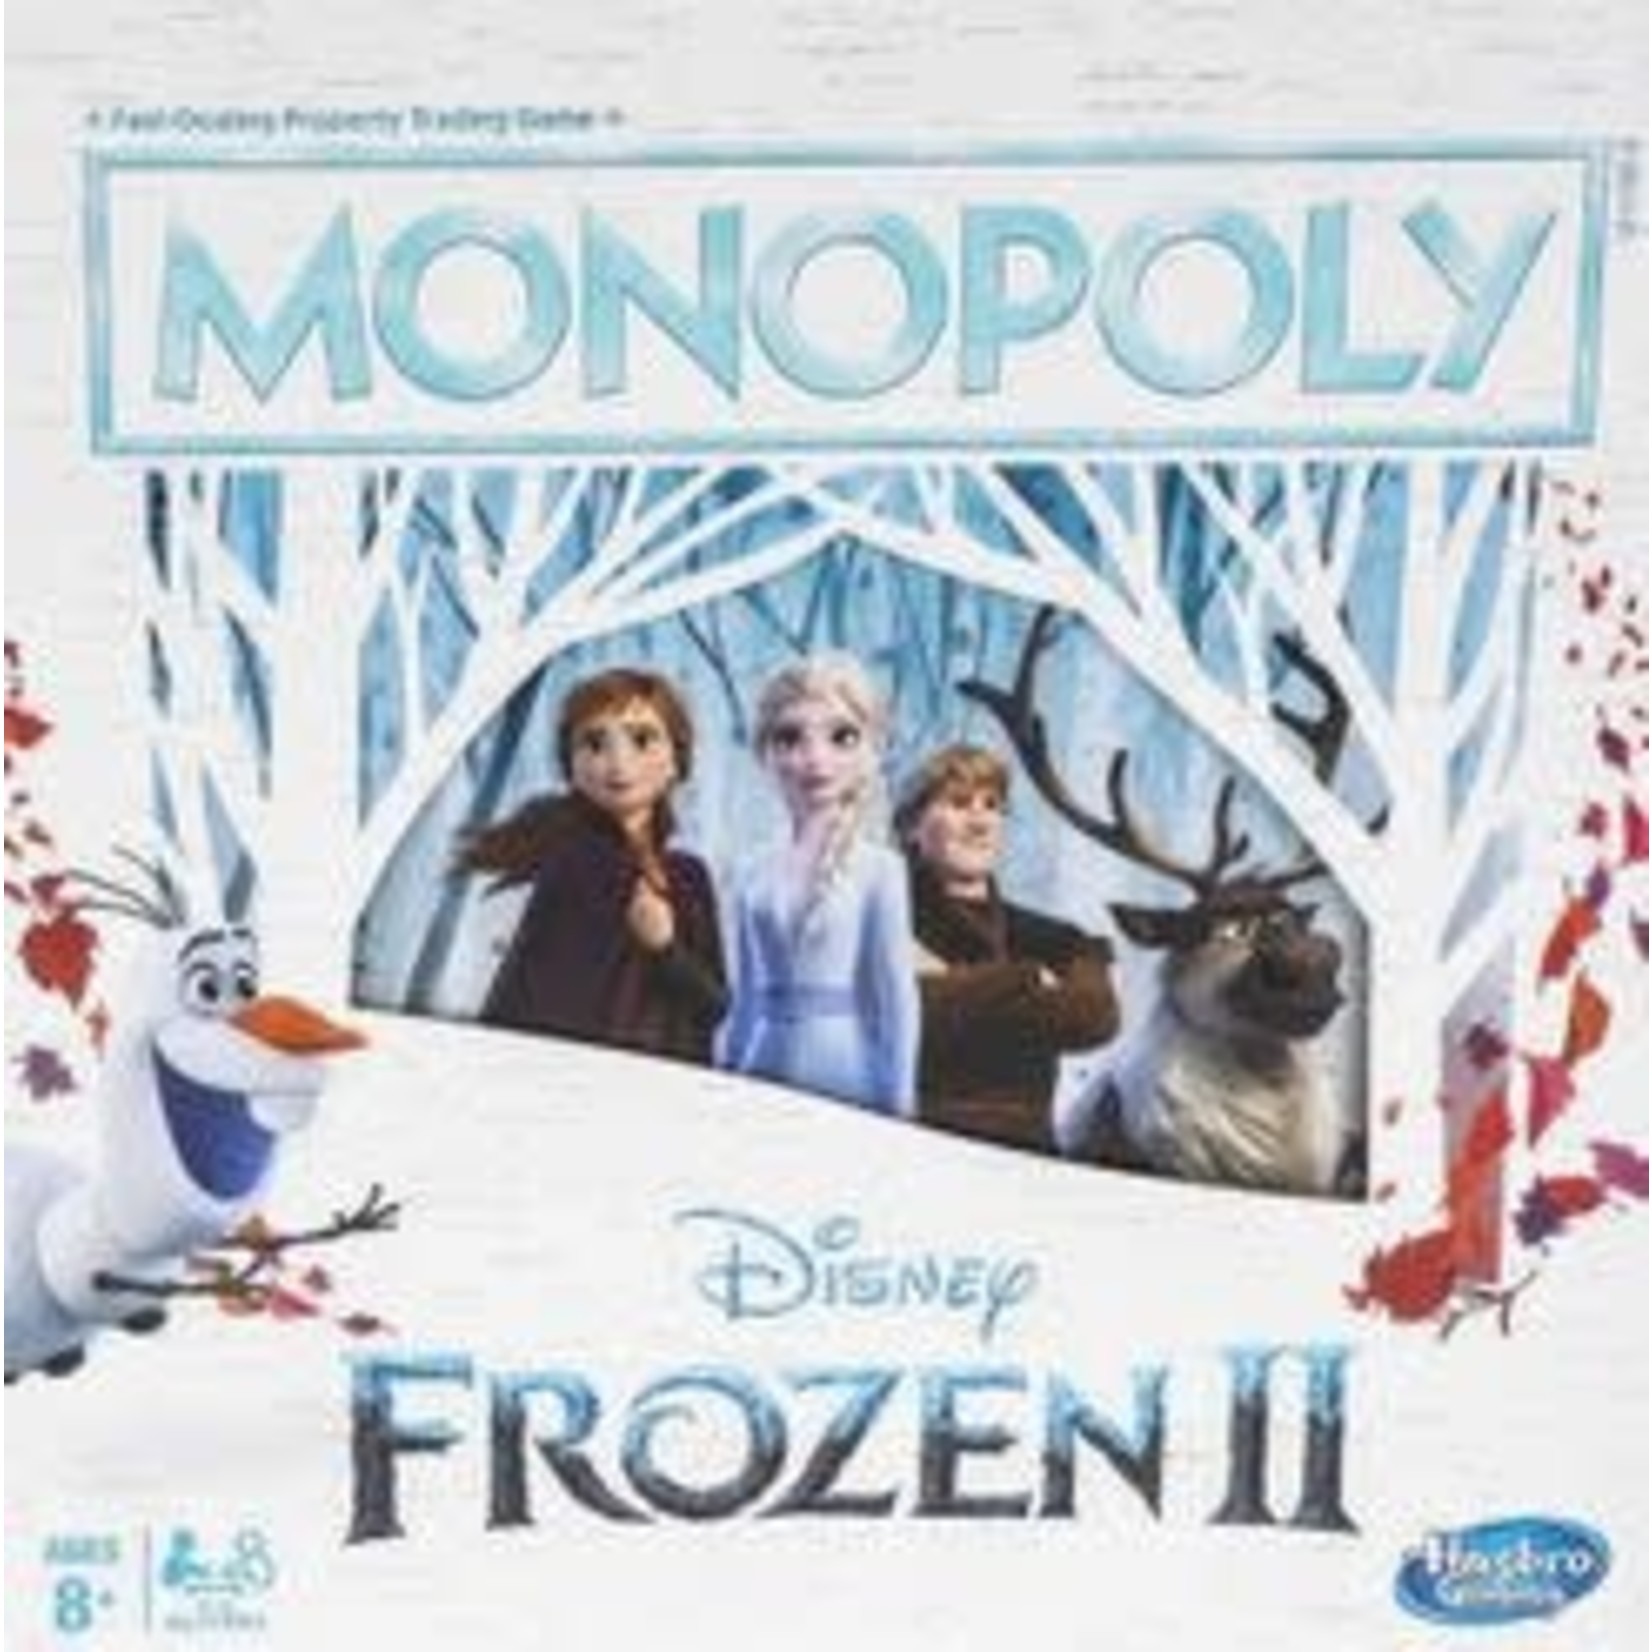 Hasbro Monopoly: Frozen II